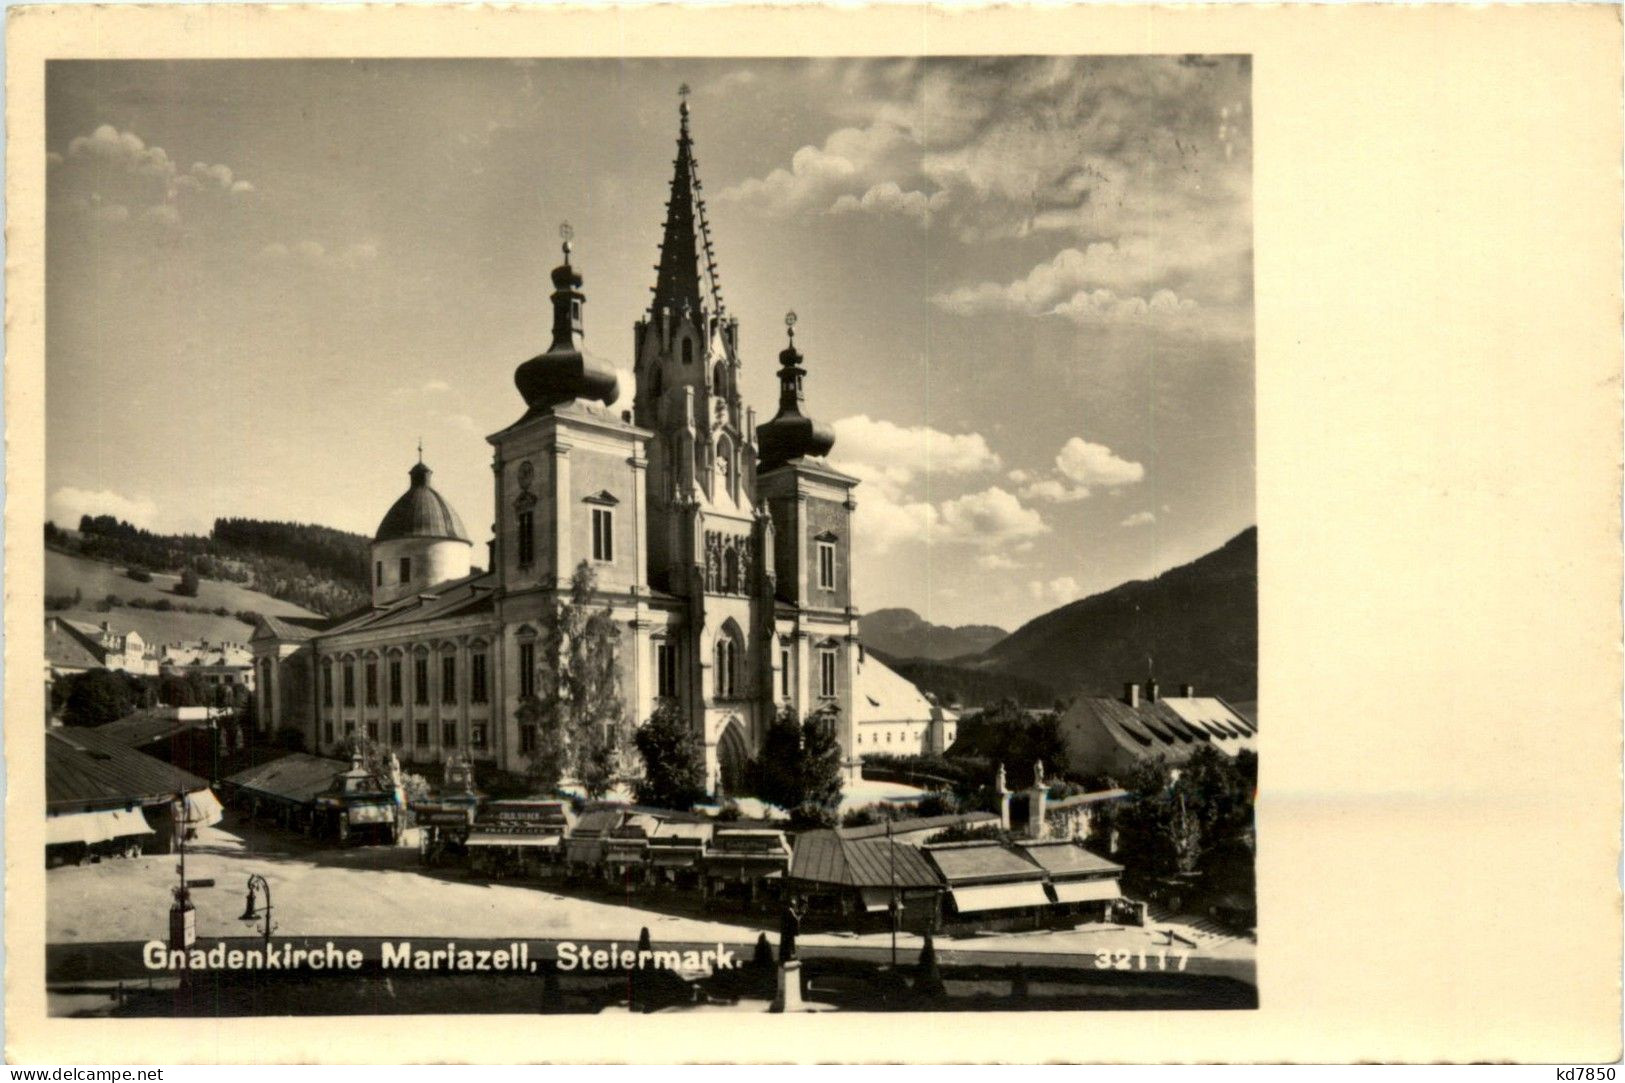 Mariazell/Steiermark - Mariazell, Gnadenkirche - Mariazell